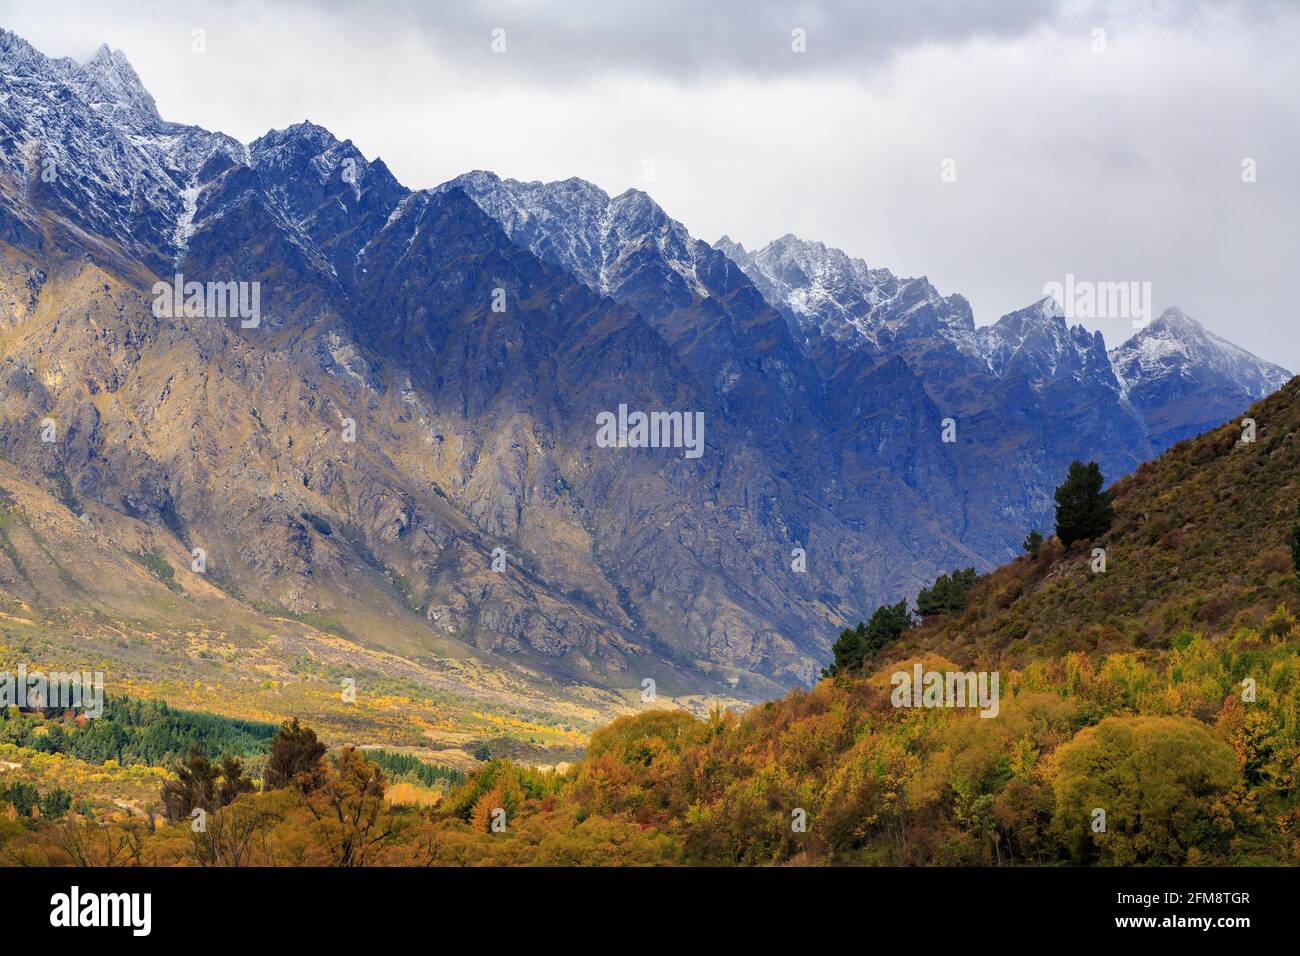 The Remarkables Mountain Range in der Nähe von Queenstown, Neuseeland, mit Schnee bestäubt. Im Vordergrund ist ein Wald mit farbenfrohem Herbstlaub Stockfoto